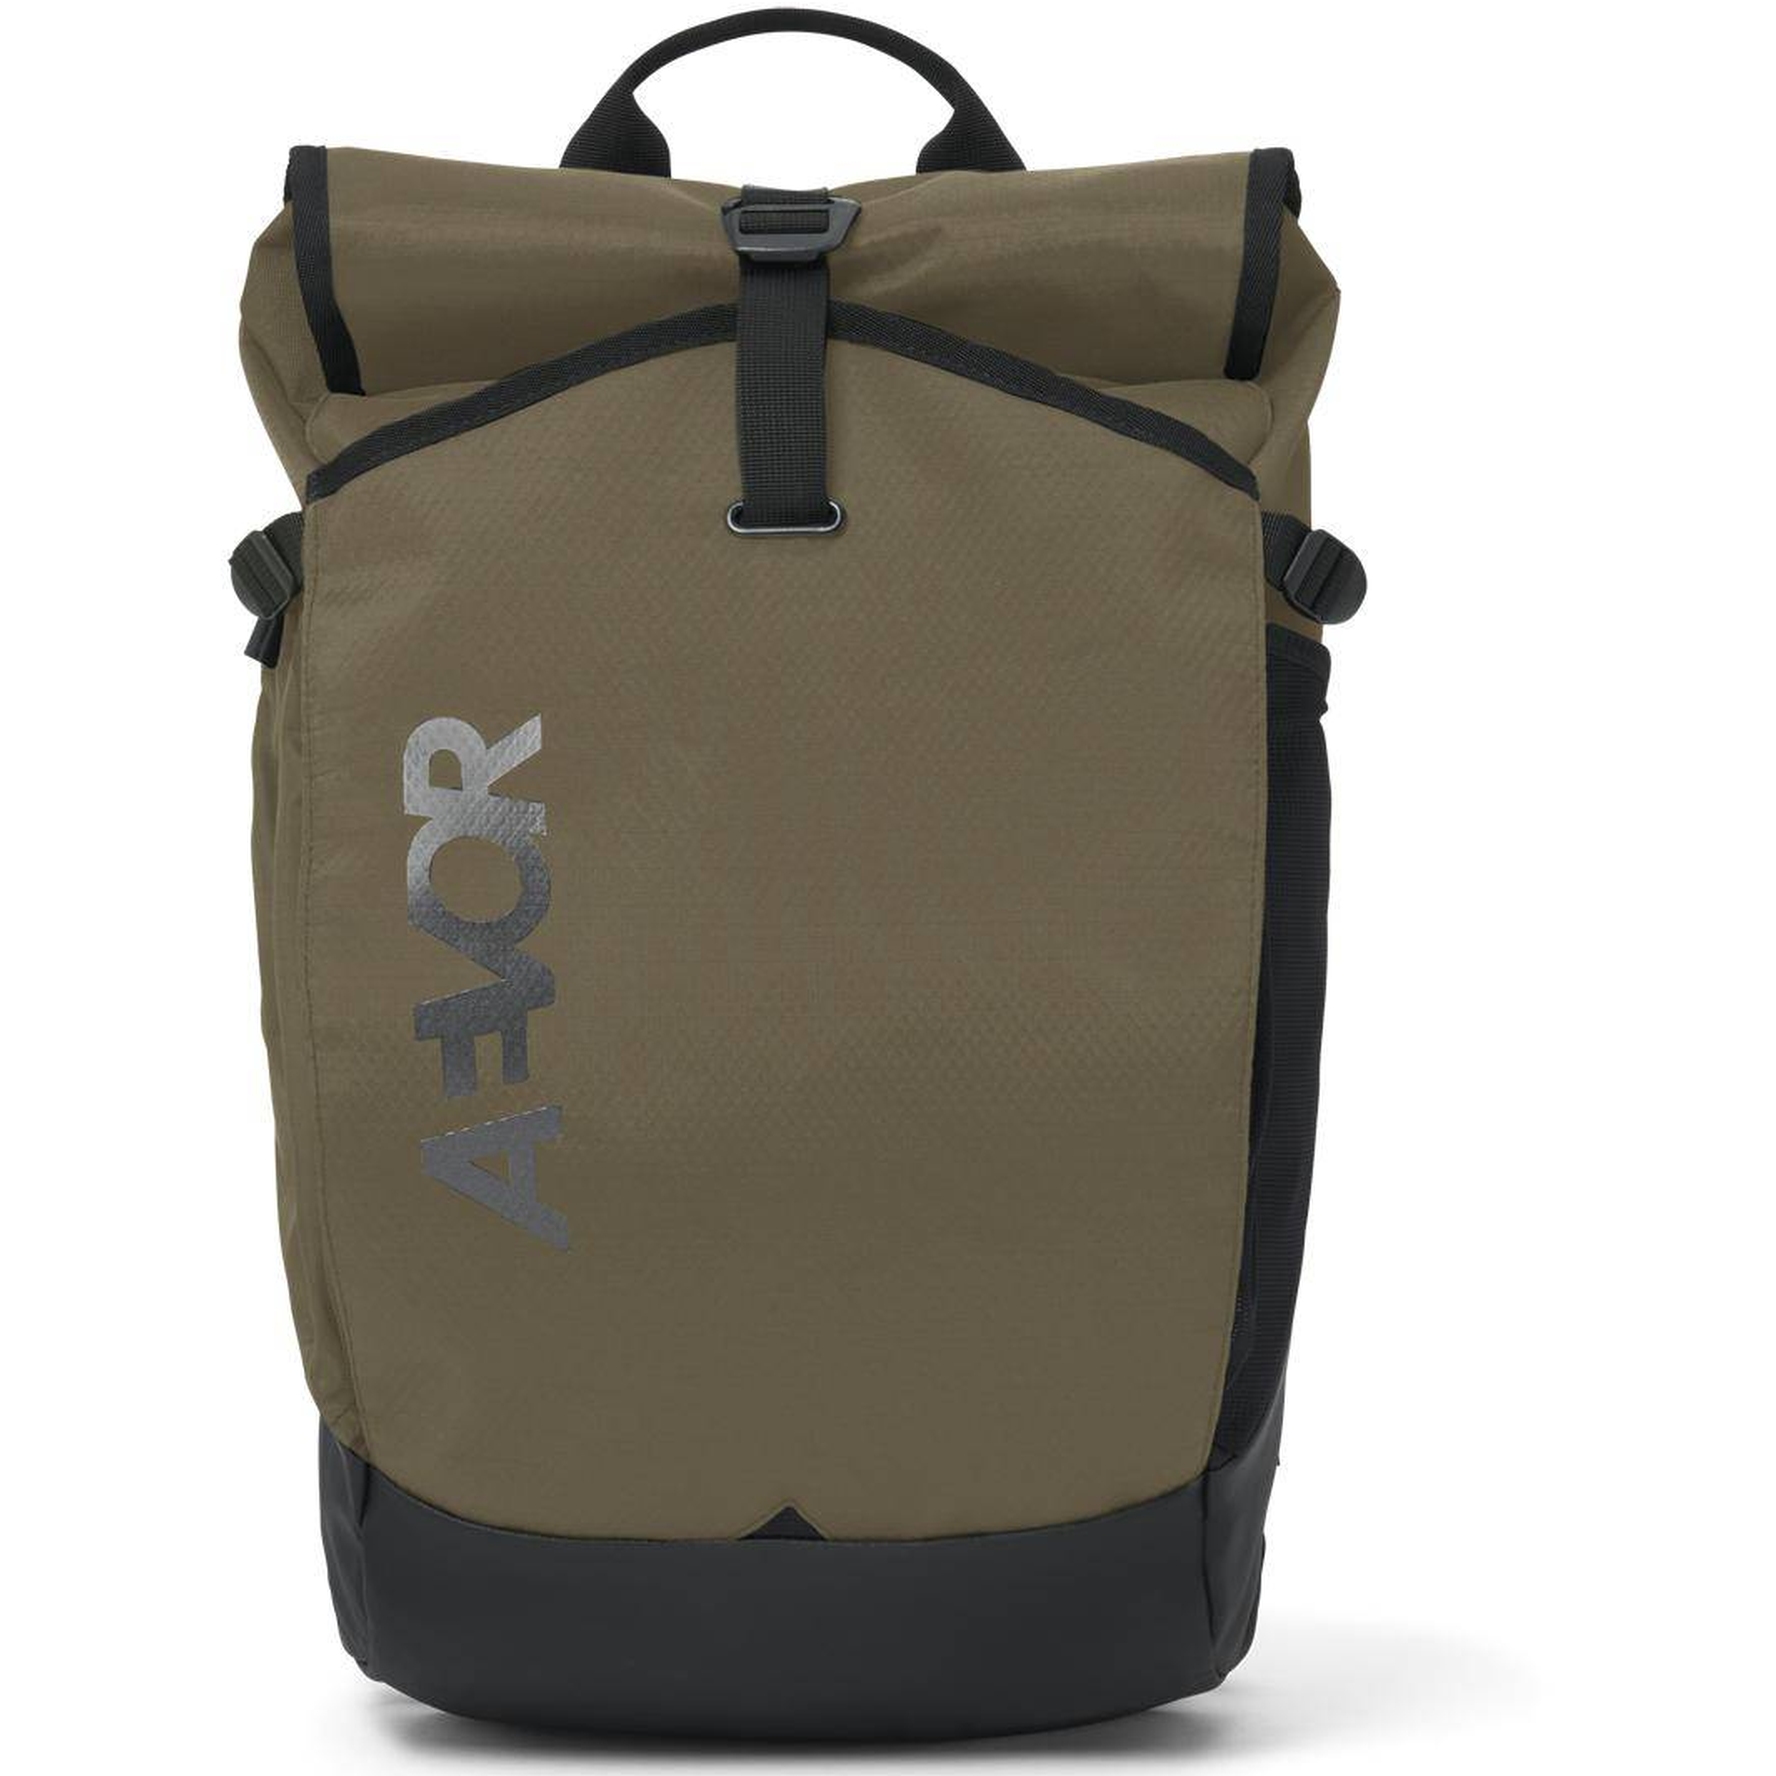 Image of AEVOR Roll Pack 28L Backpack - Proof Olive Gold